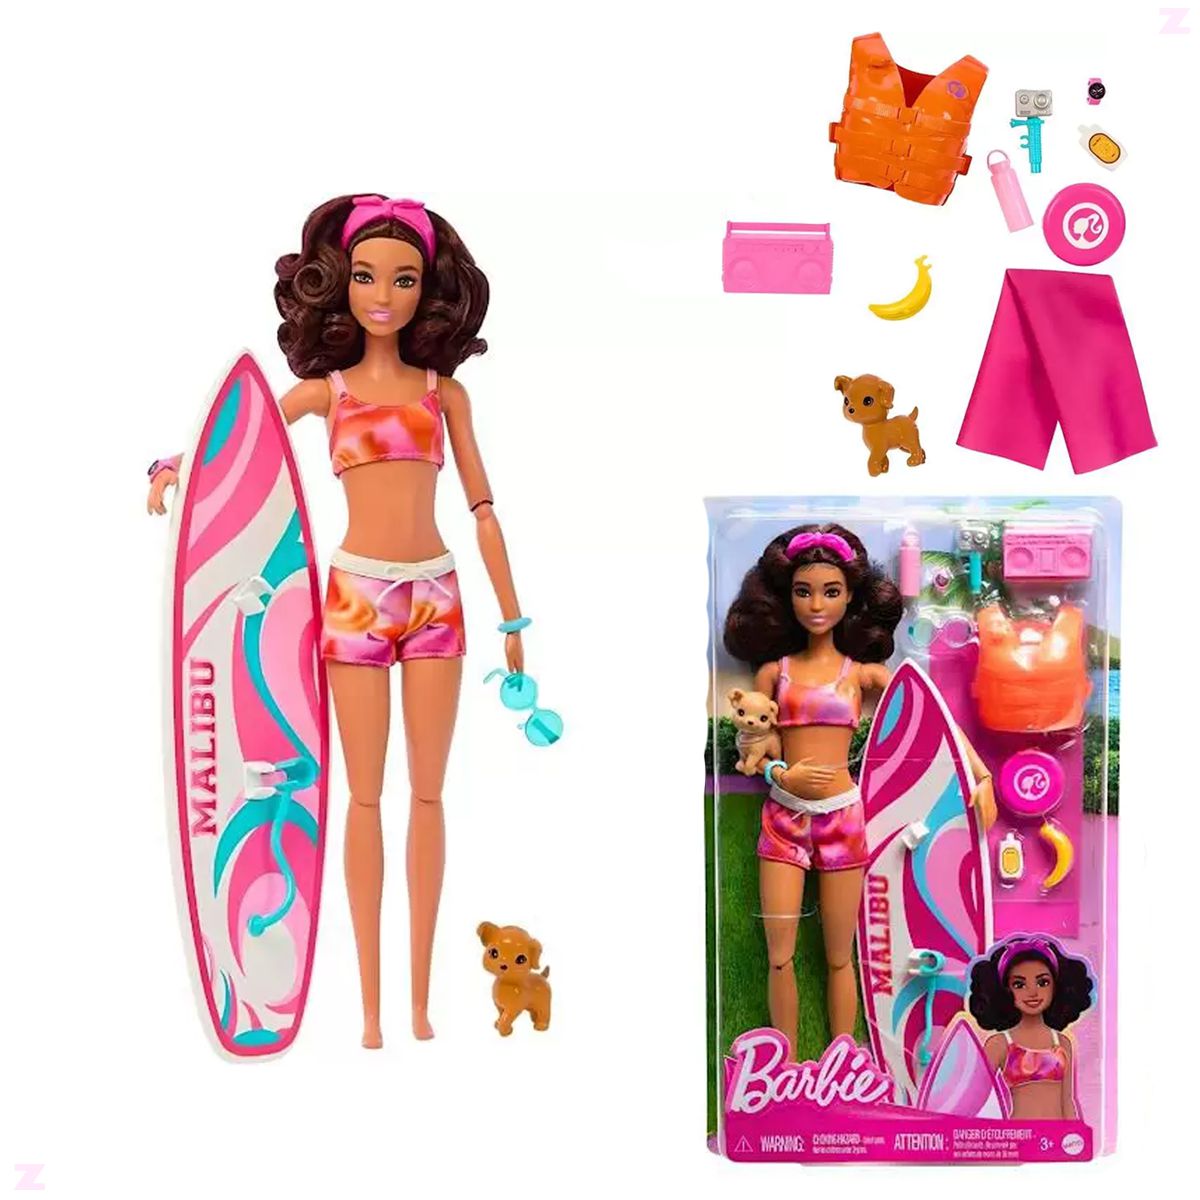 Barbie and Ken Surfer dolls 2023 